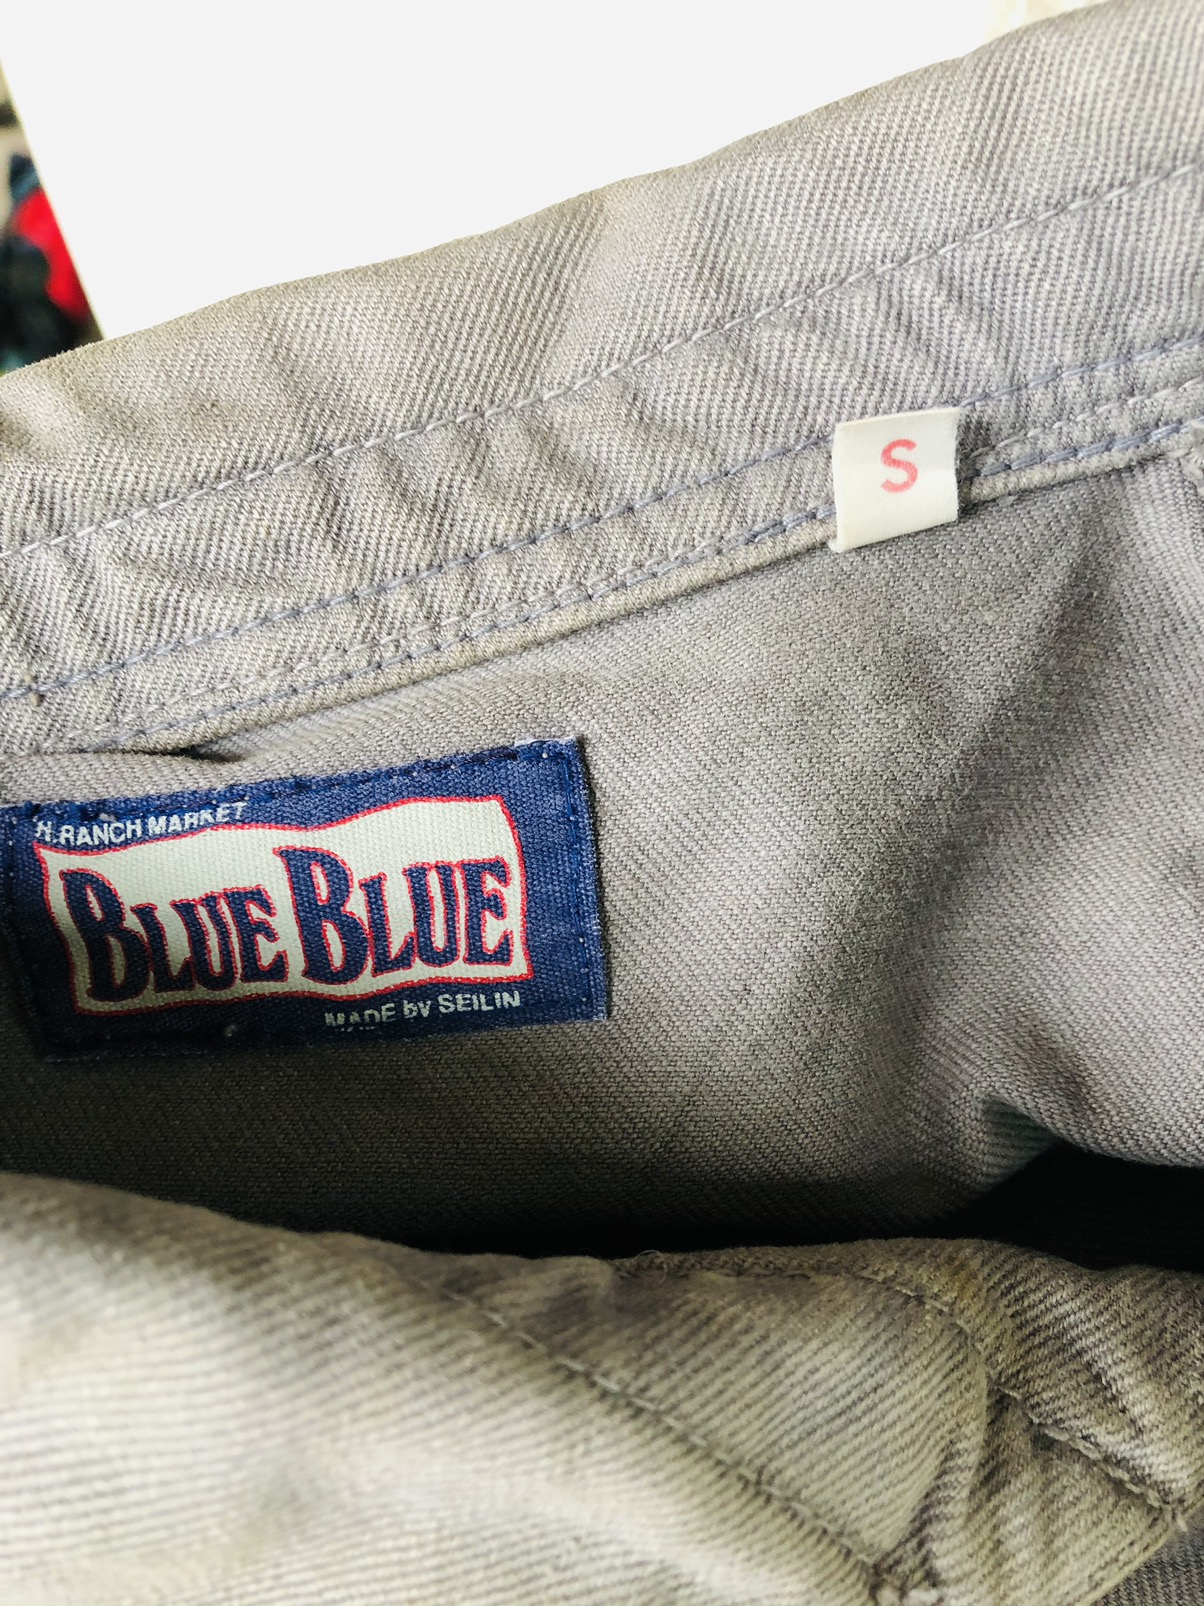 Blue Blue Japan Minimalist Jacket in S - 6